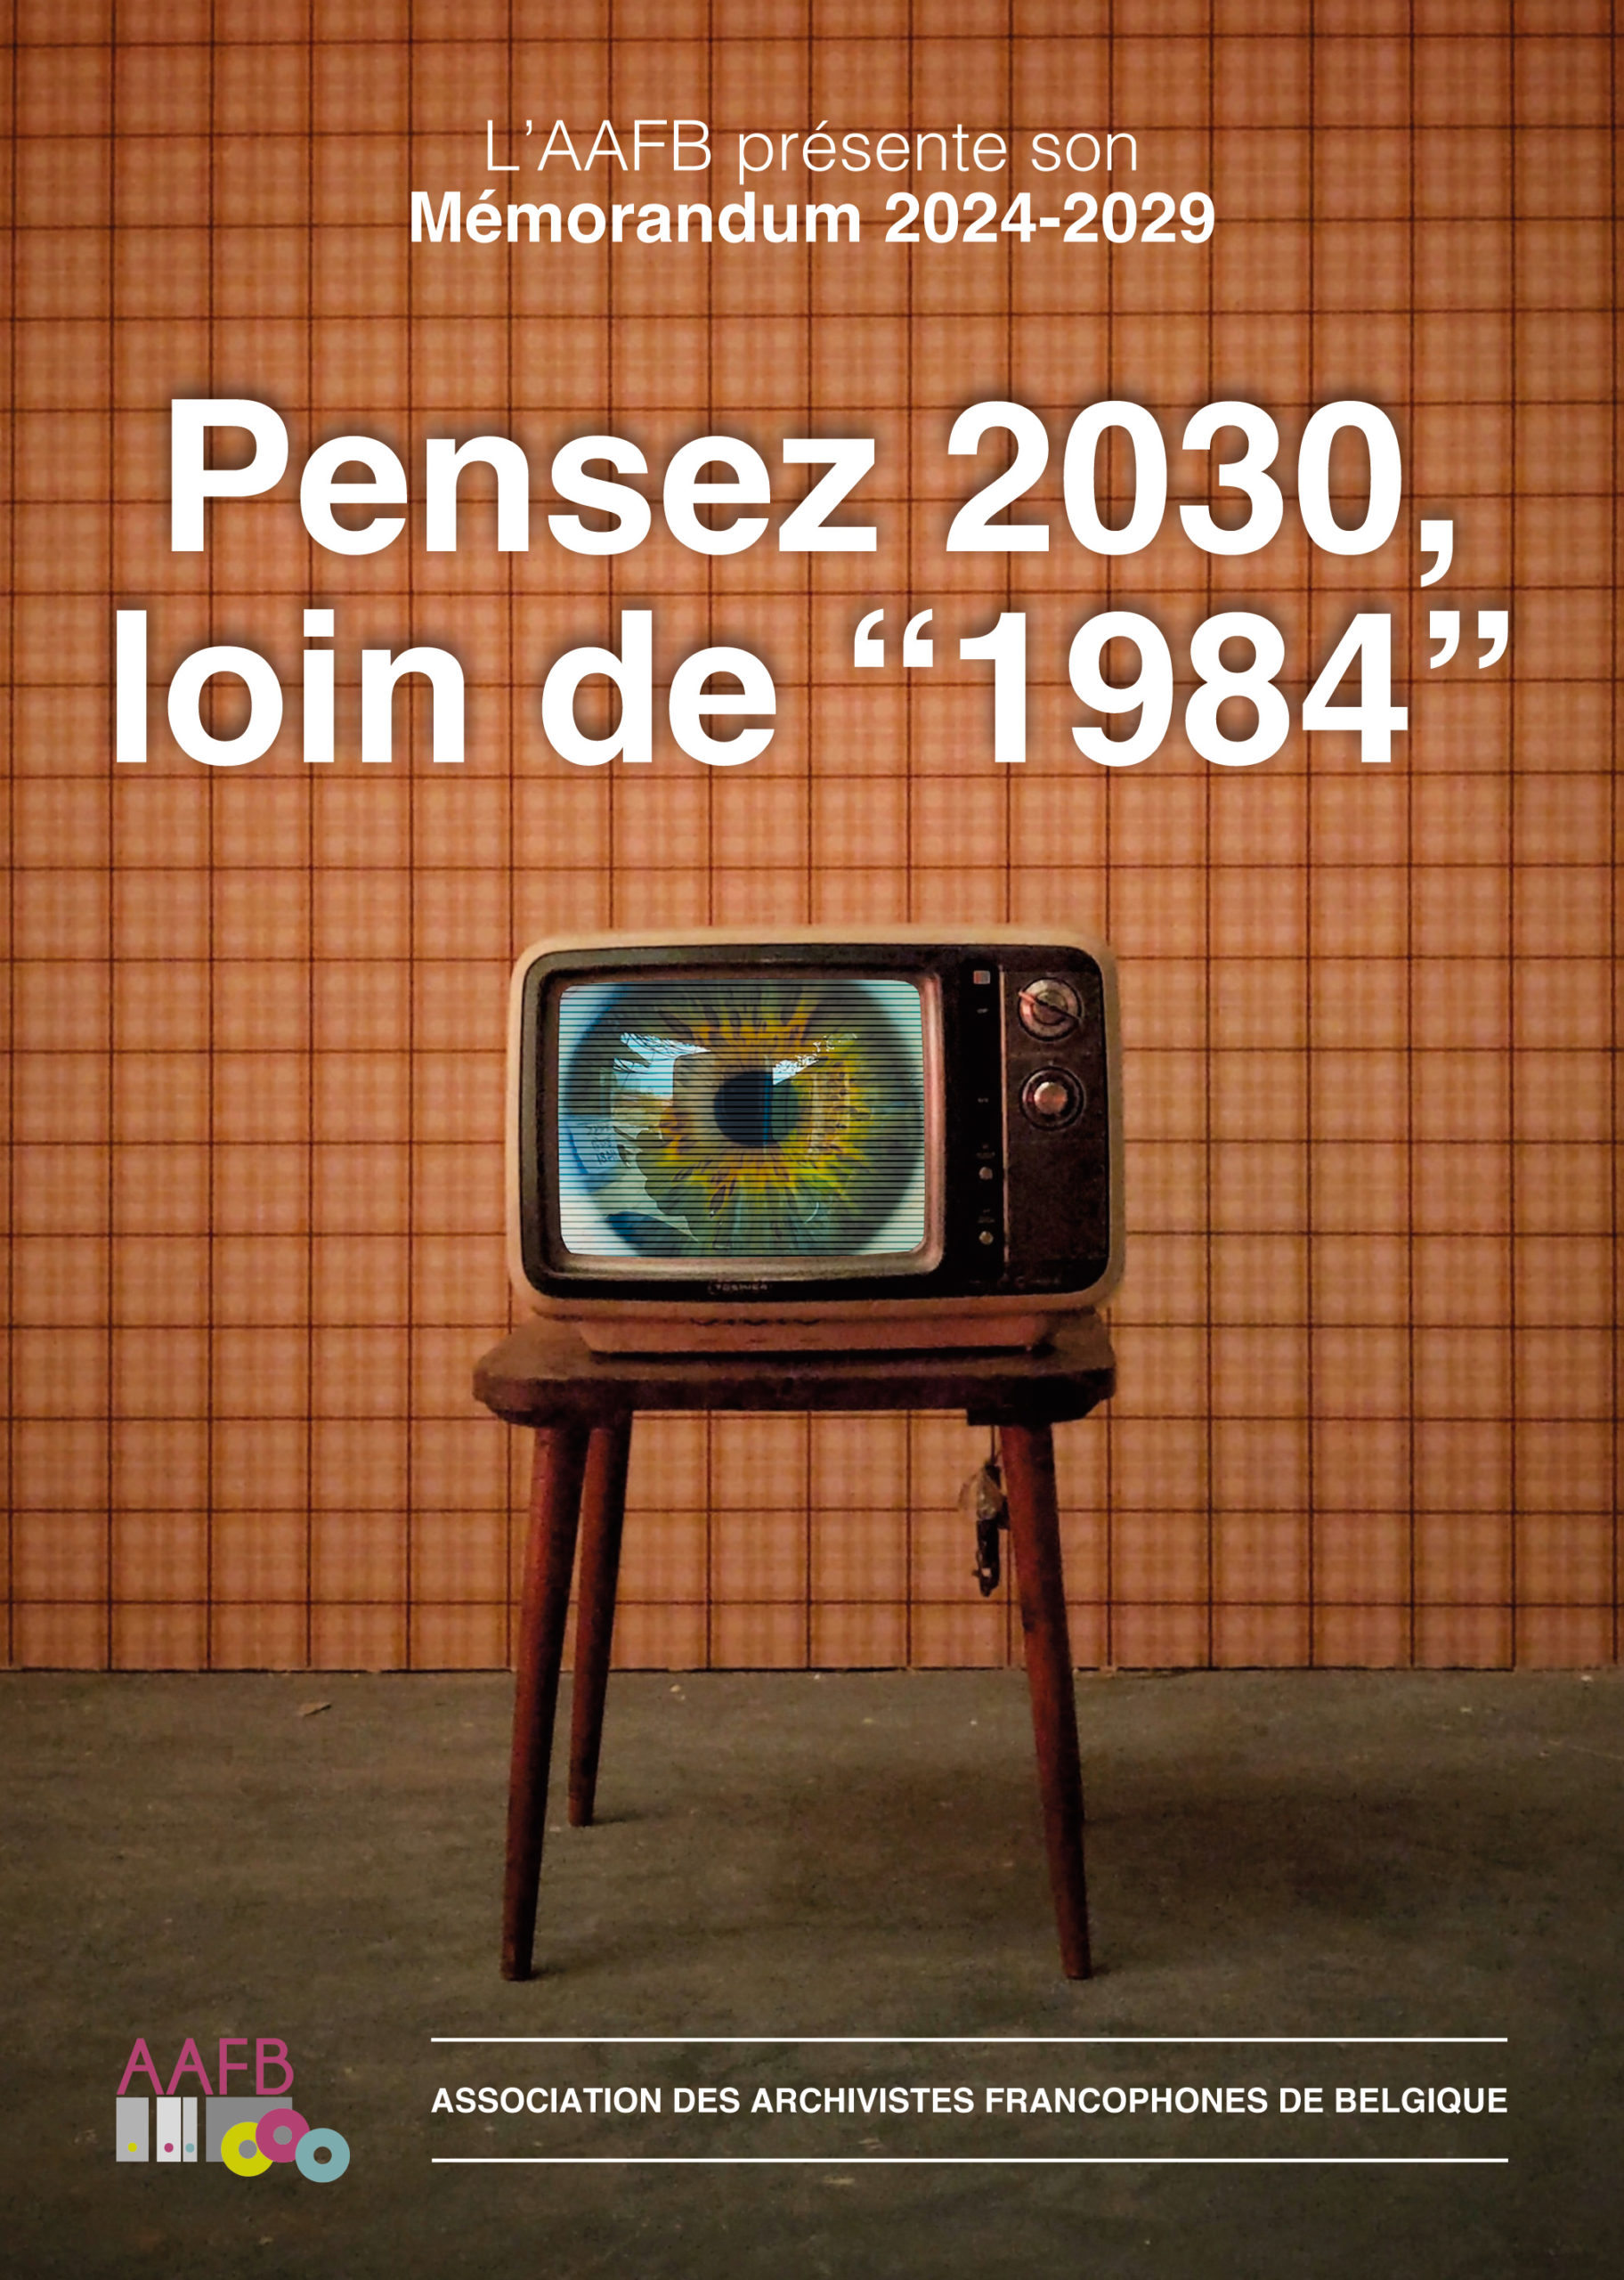 Publication de notre mémorandum 2024-2029 : Pensez 2030, loin de “1984”